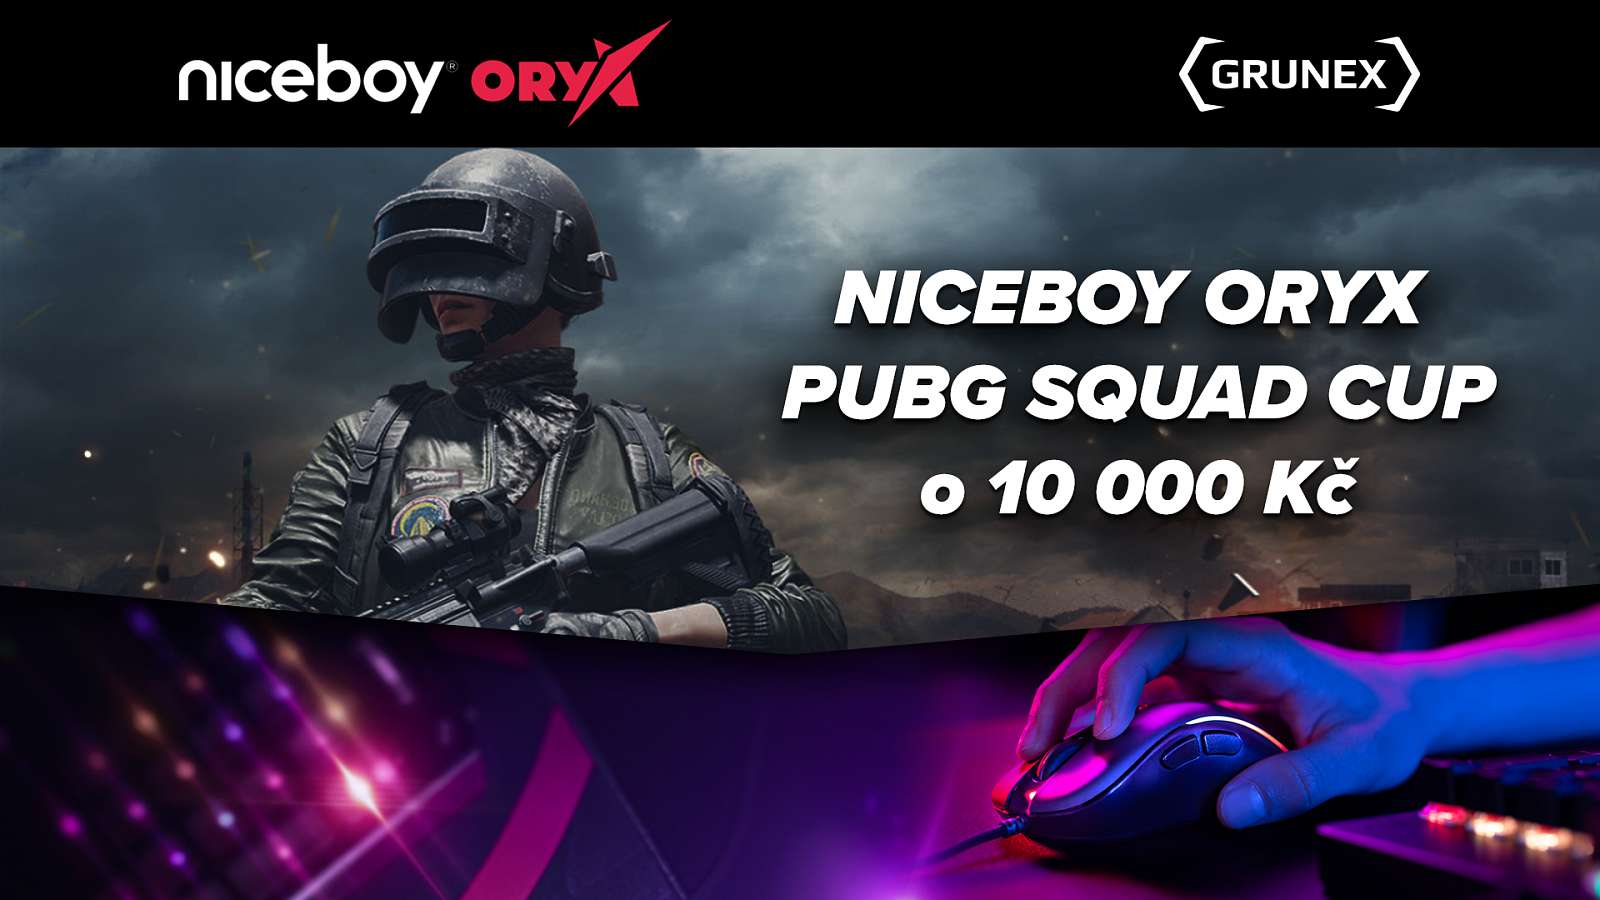 Ukažte svou týmovou sílu v Niceboy ORYX PUBG Squad Cupu